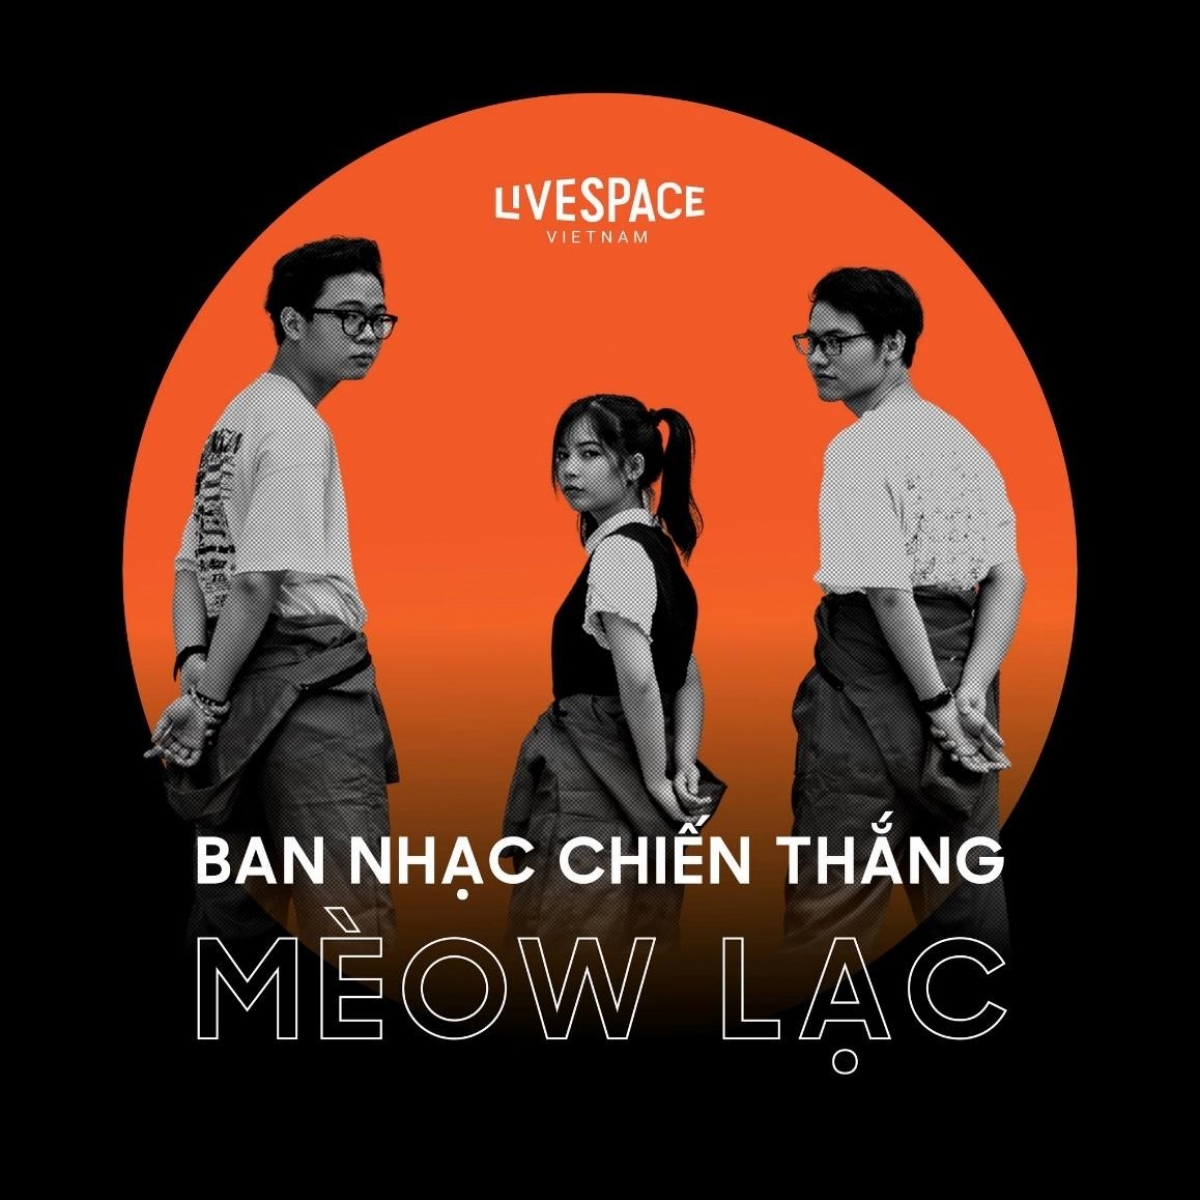 Mèow Lạc, ban nhạc chiến thắng trong dự án LiveSpace Vietnam do Viện Pháp tại Việt Nam và Monsoon Music Festival tổ chức. Ảnh do Viện Pháp cung cấp